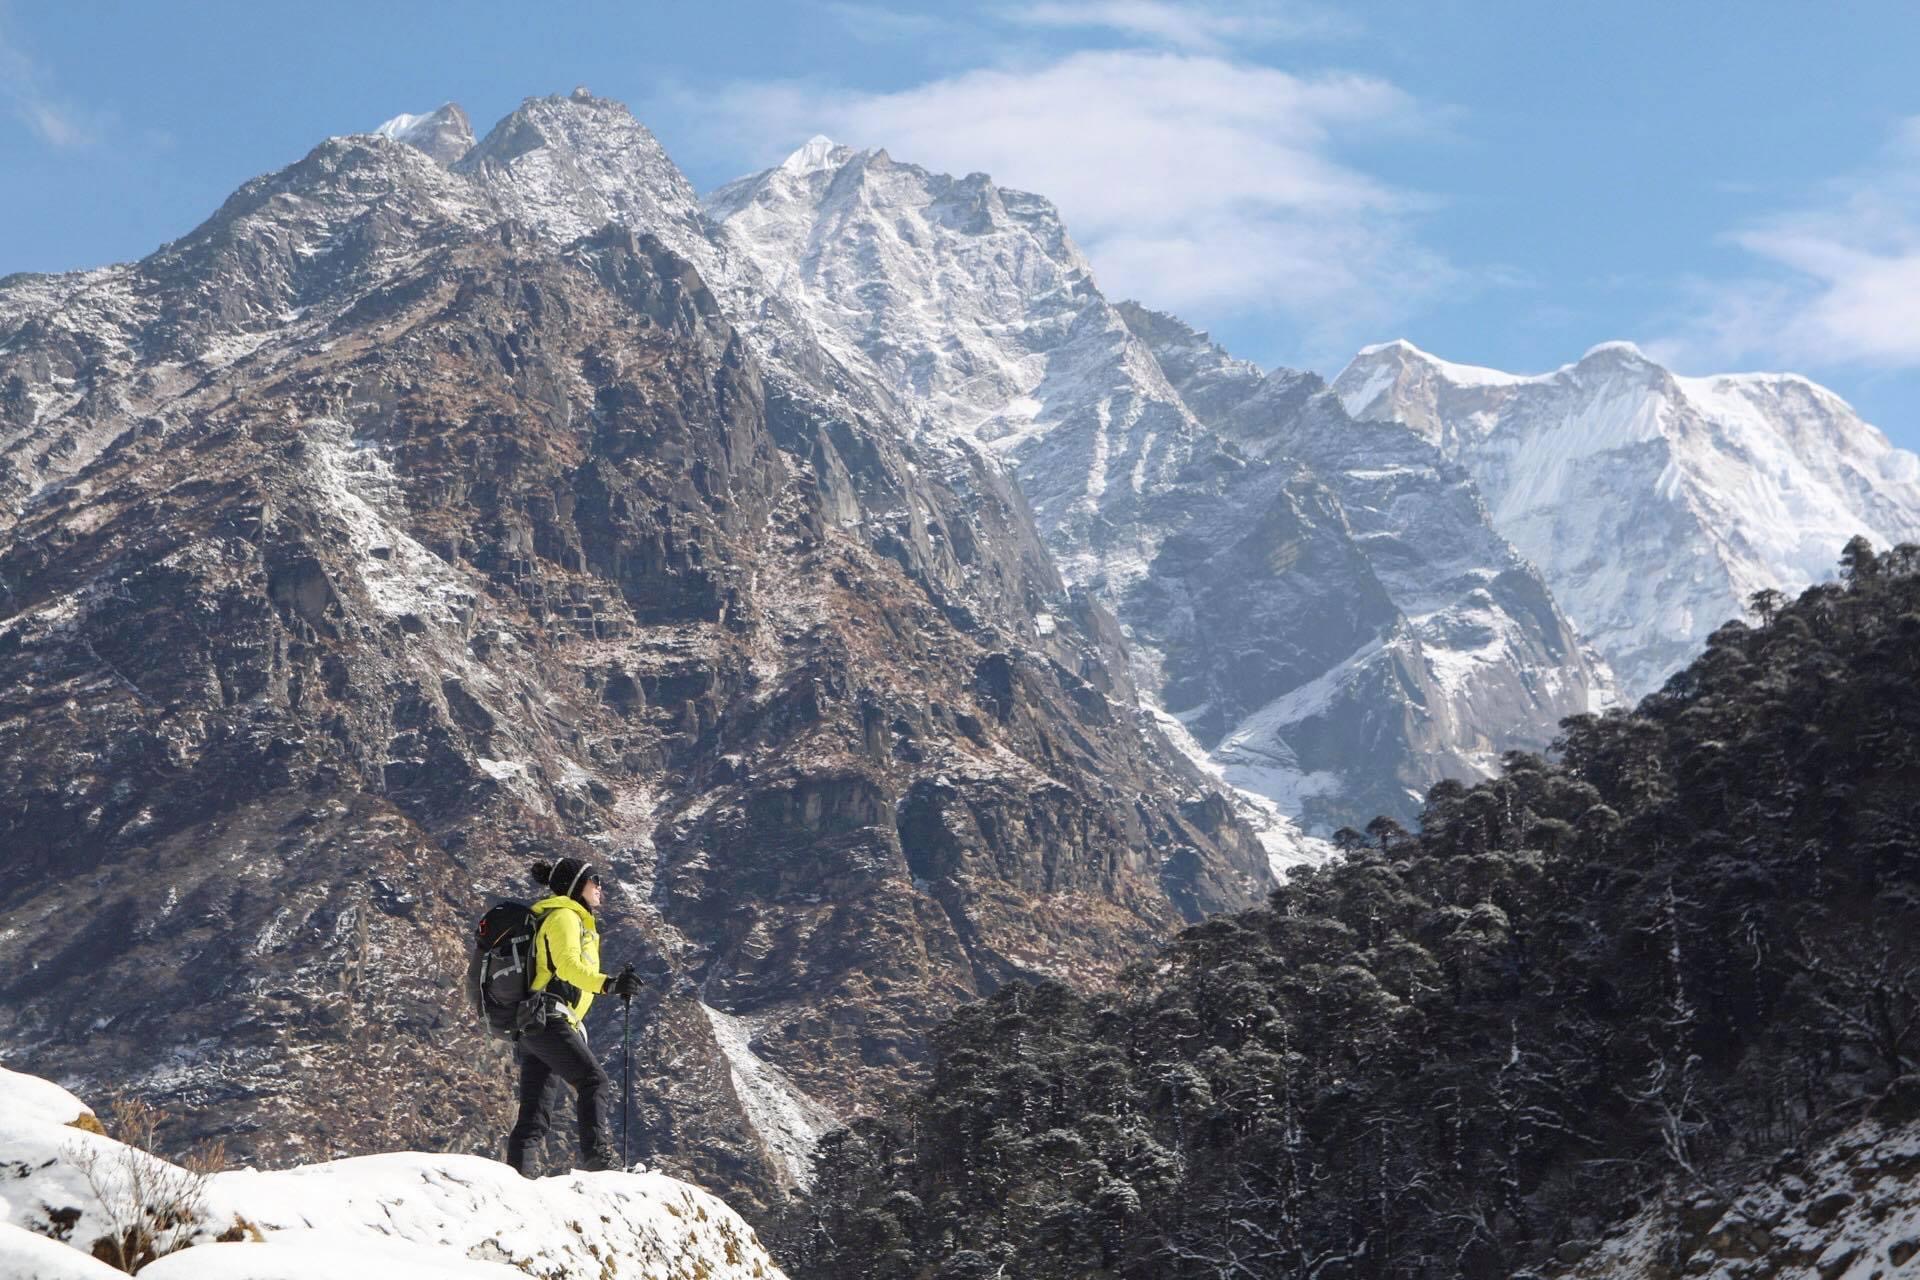 Bella Mai chia sẻ trải nghiệm nhớ đời khi trekking ở ngọn núi cao hơn 6600m tại Nepal